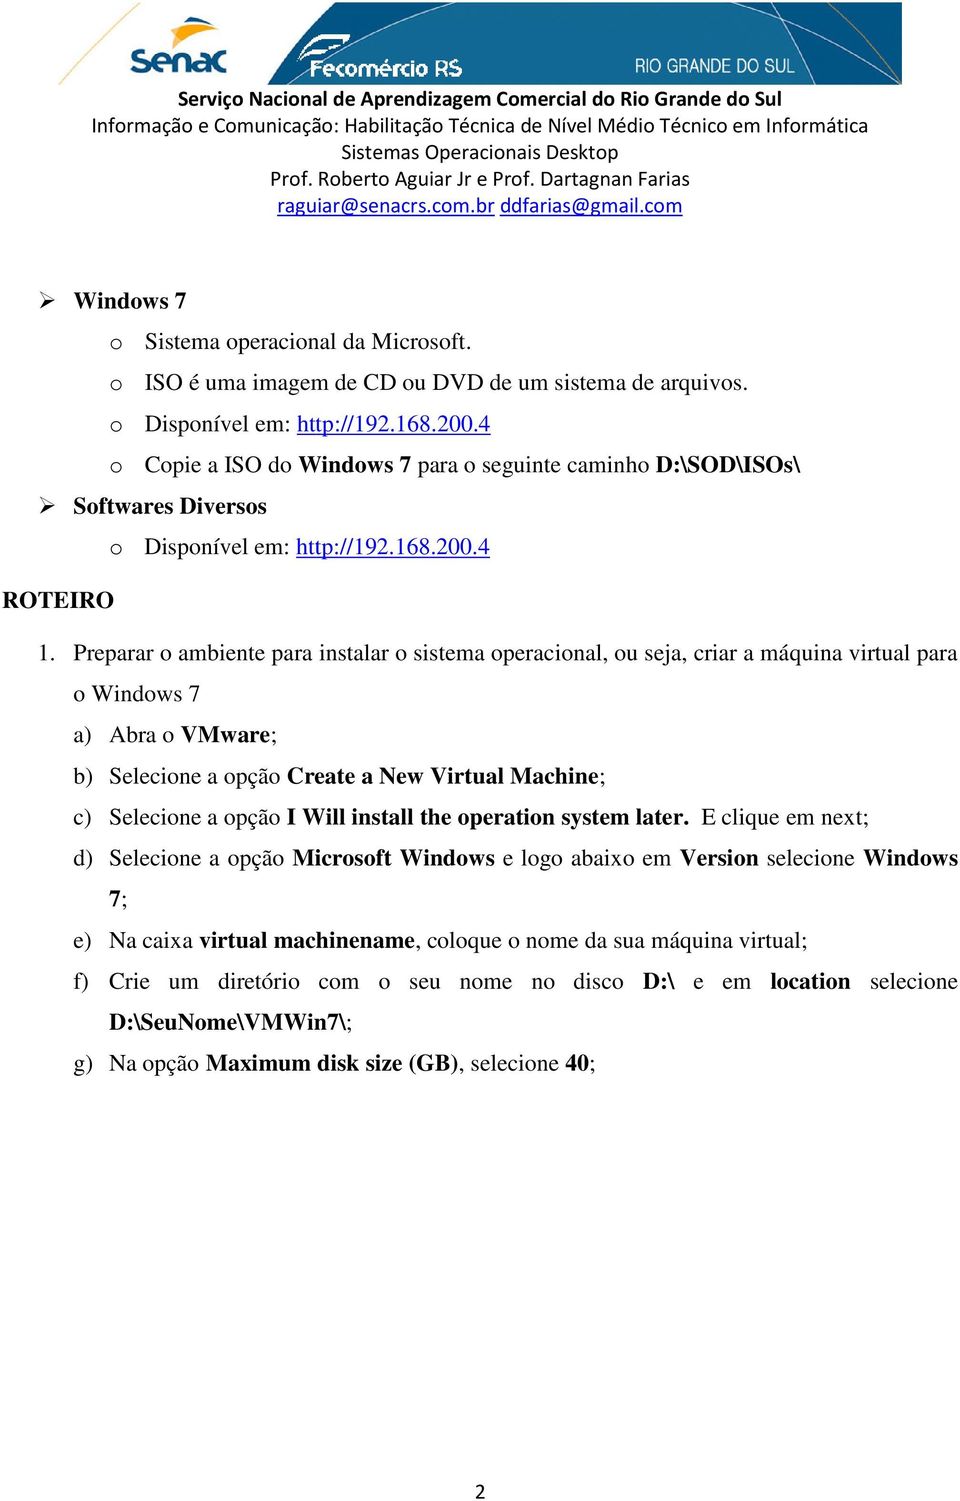 Preparar o ambiente para instalar o sistema operacional, ou seja, criar a máquina virtual para o Windows 7 a) Abra o VMware; b) Selecione a opção Create a New Virtual Machine; c) Selecione a opção I